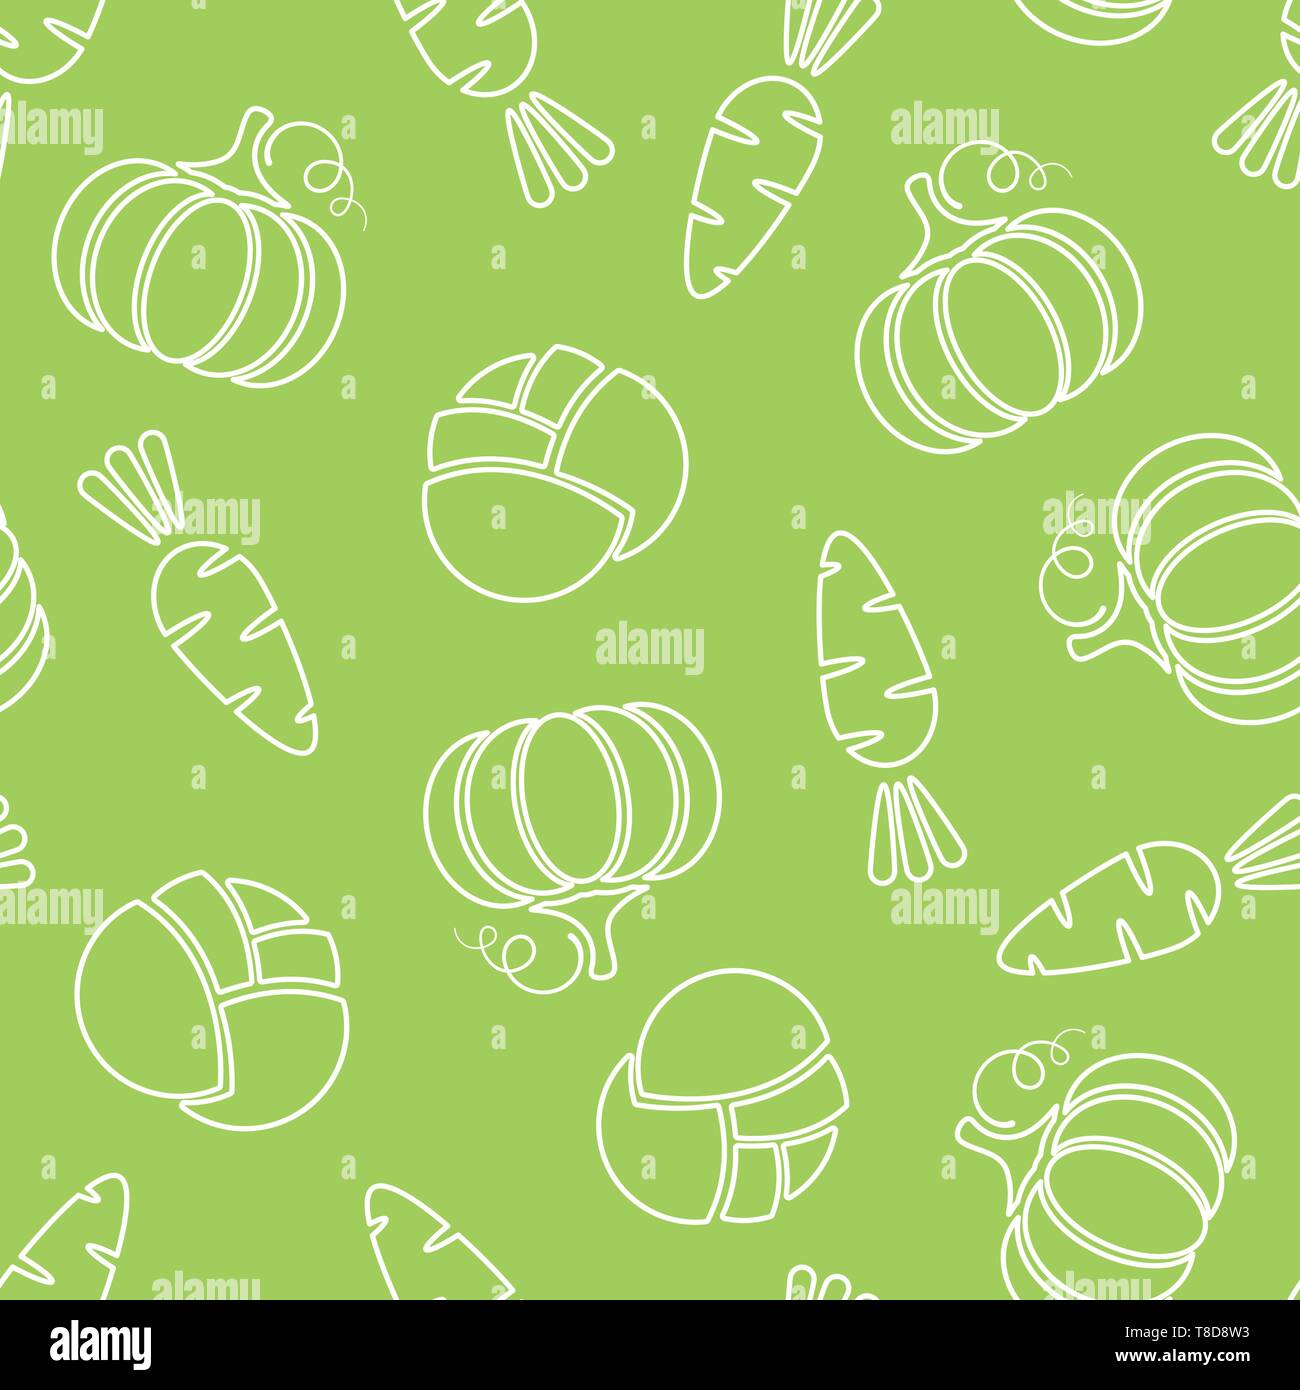 Linea Seamless pattern vegetale vettore illustrazione piana. Moderno texture  seamless pattern design con silhouette vegetale nei colori verde e bianco  per una sana dieta decor o carta da parati vintage Immagine e